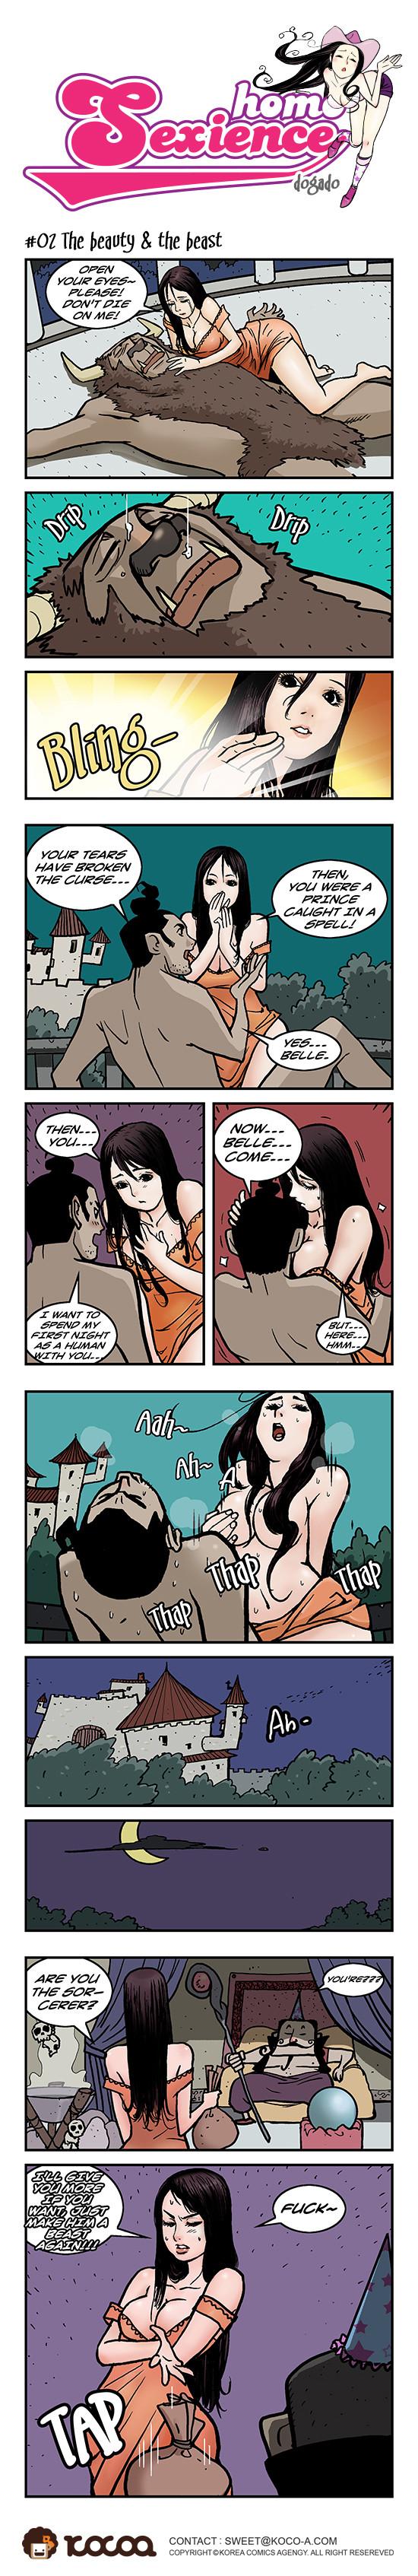 Amateursex Homo Sexience Spit - Page 2